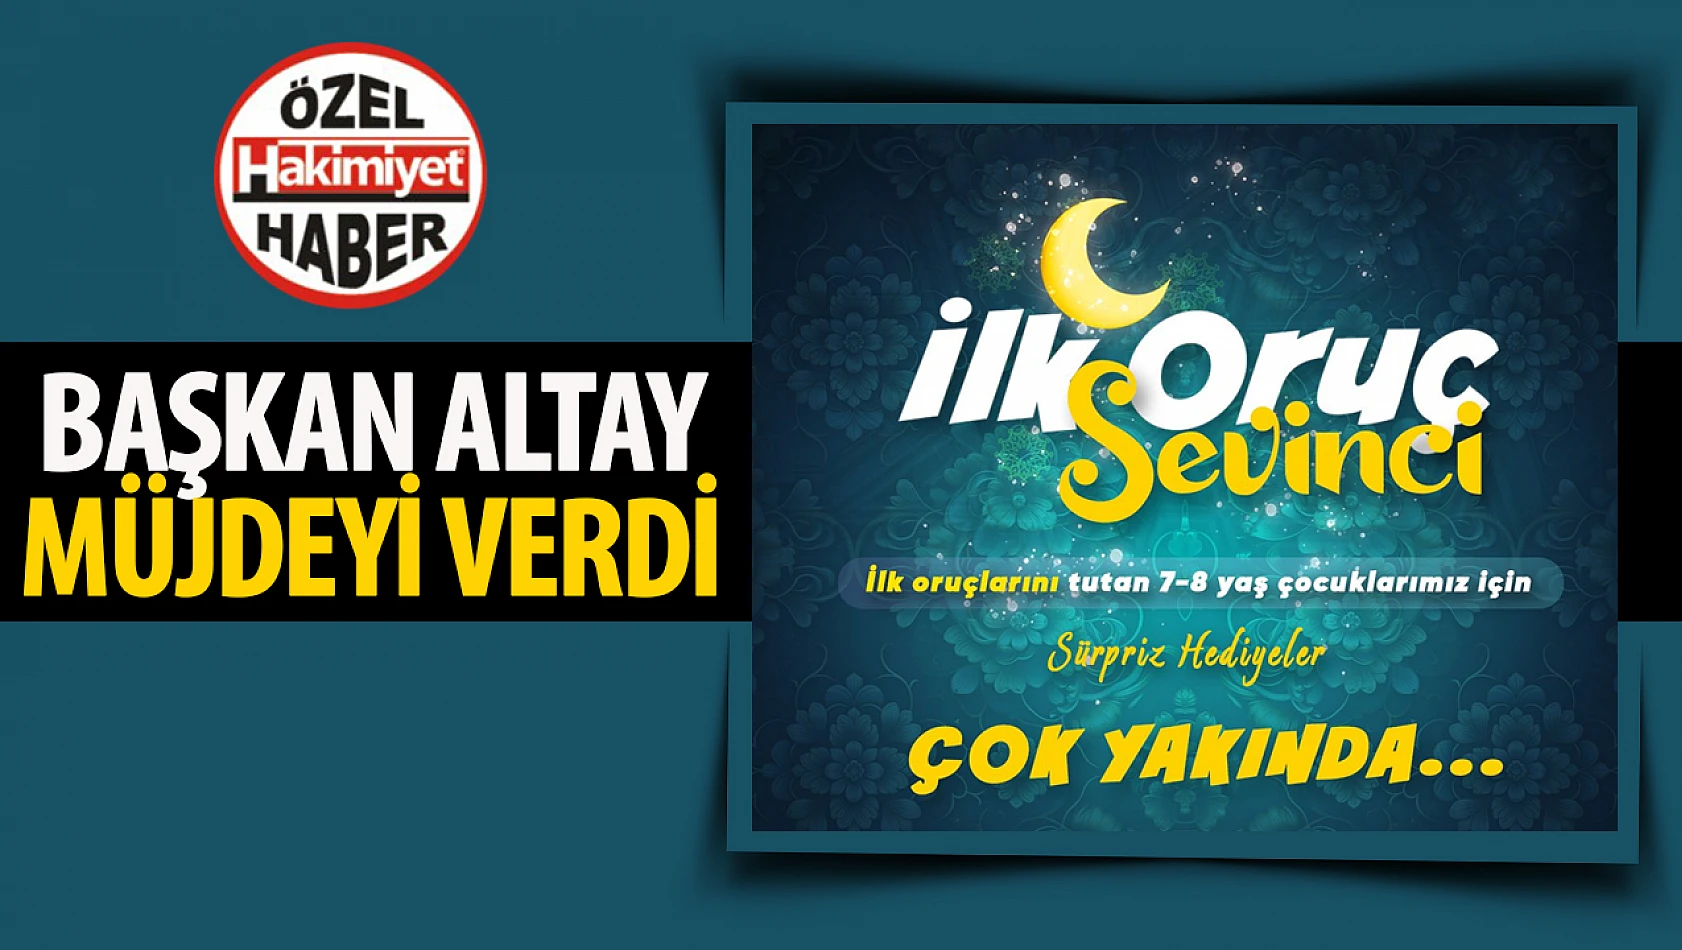 Konya Büyükşehir Belediyesi, Çocuklara İlk Oruç Sevinciyle Sürpriz Hediyeler Sunacak!